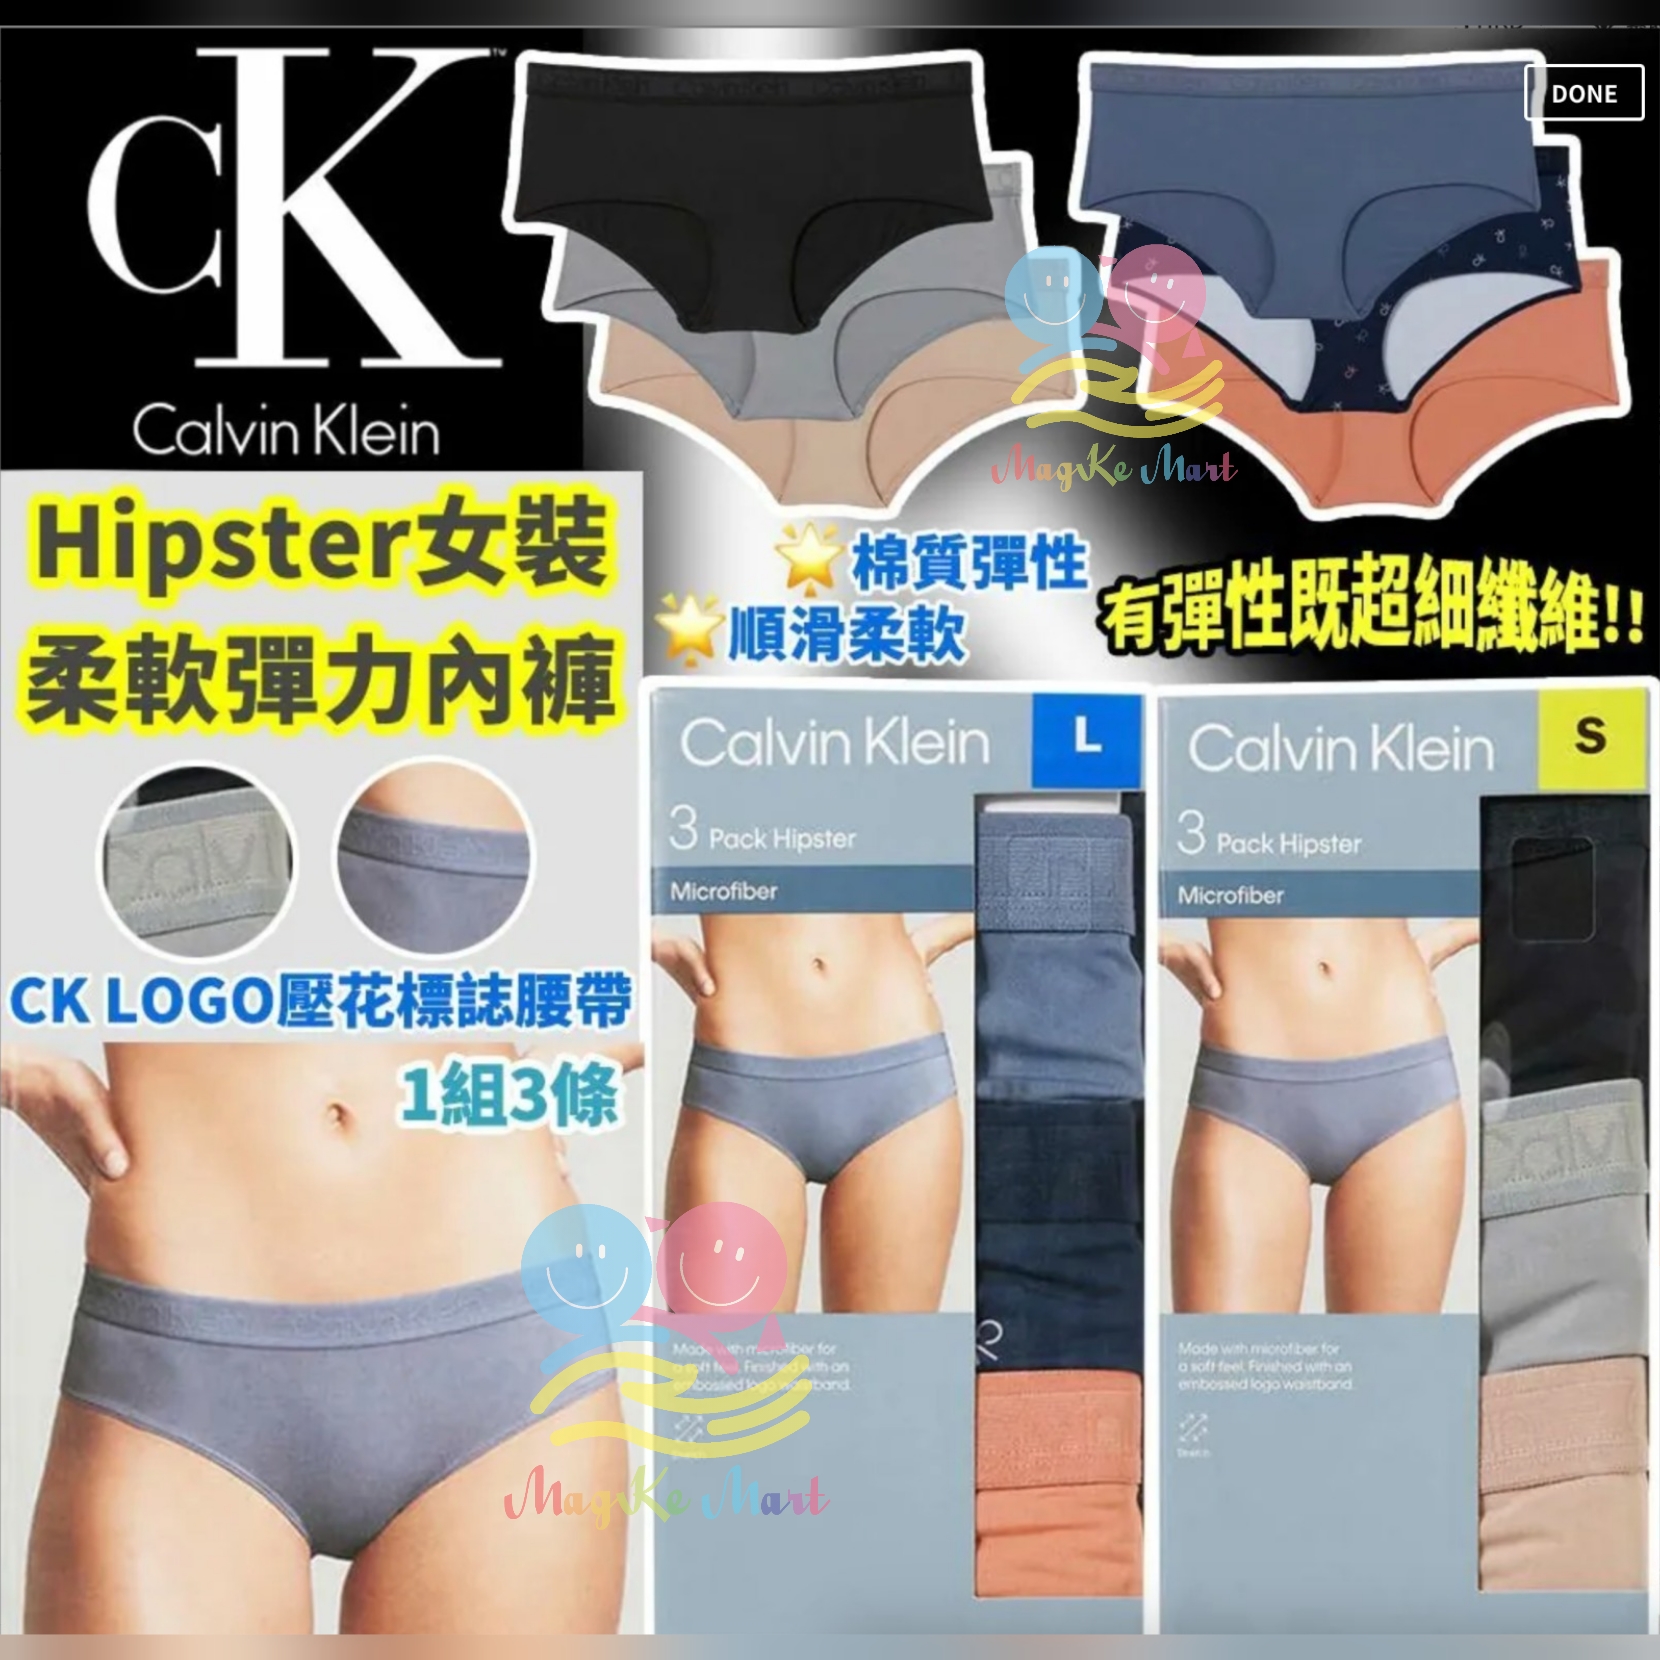 Calvin Klein Hipster 女裝柔軟彈力內褲(1套3條)(顏色隨機)